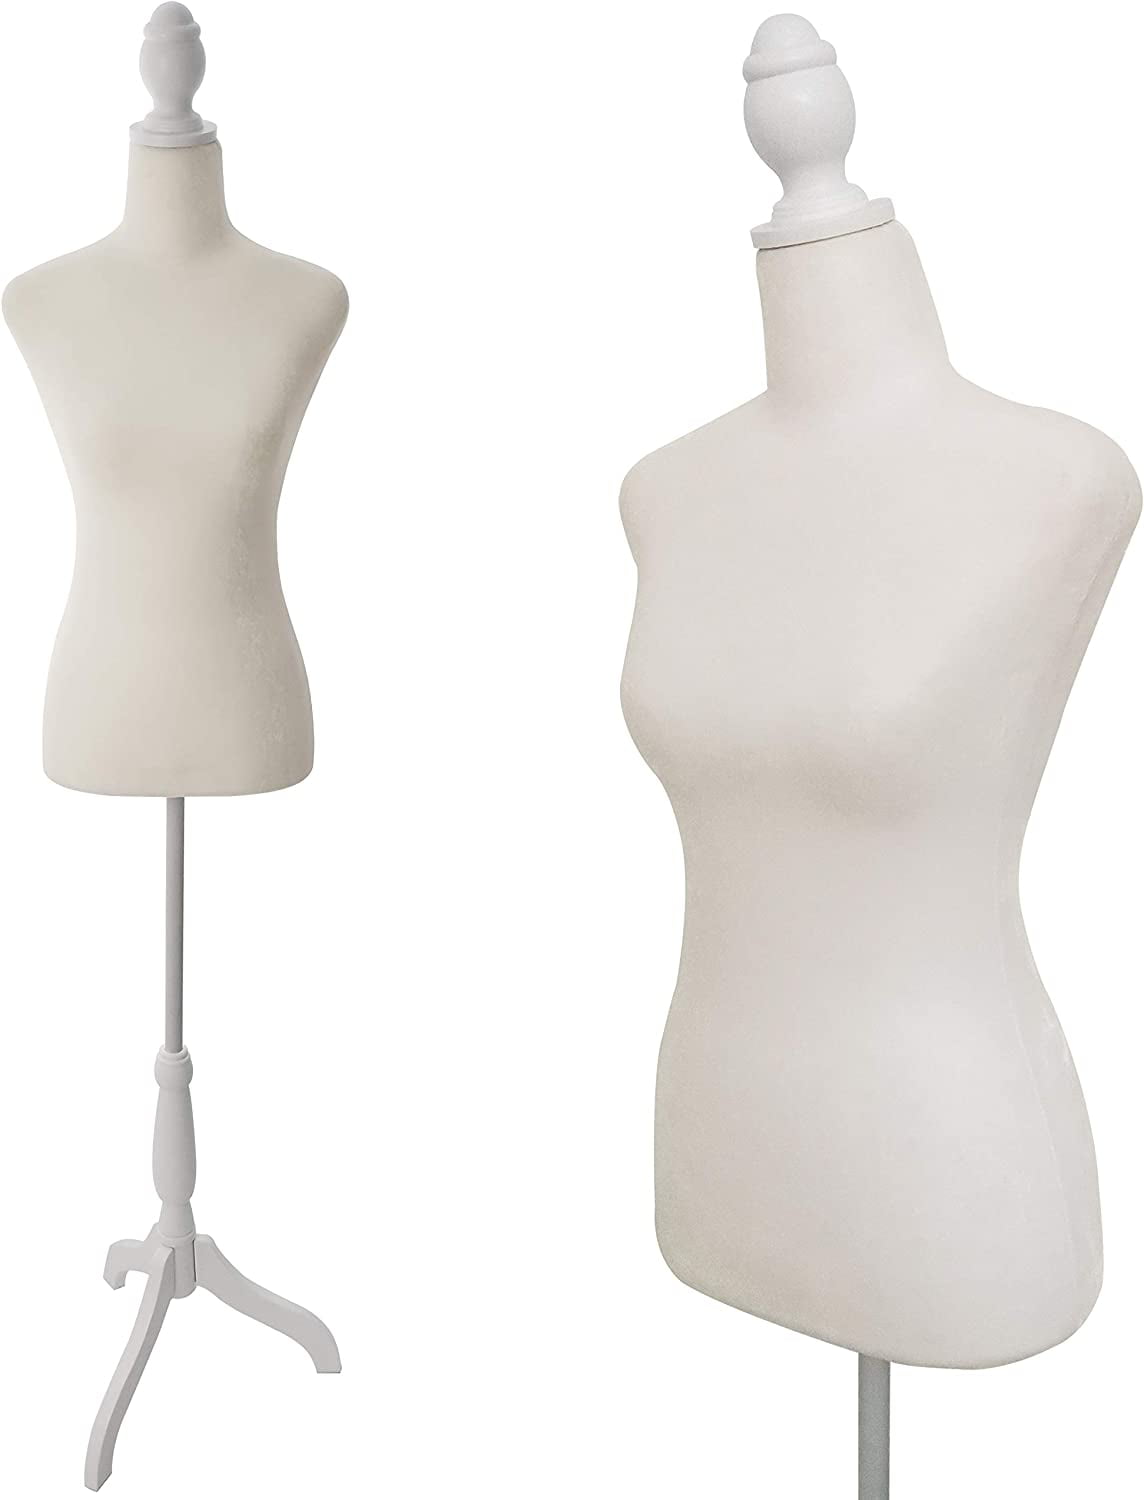 Beifuform Female Dressform Mannequin Dummy Manikin USA ASTM Size